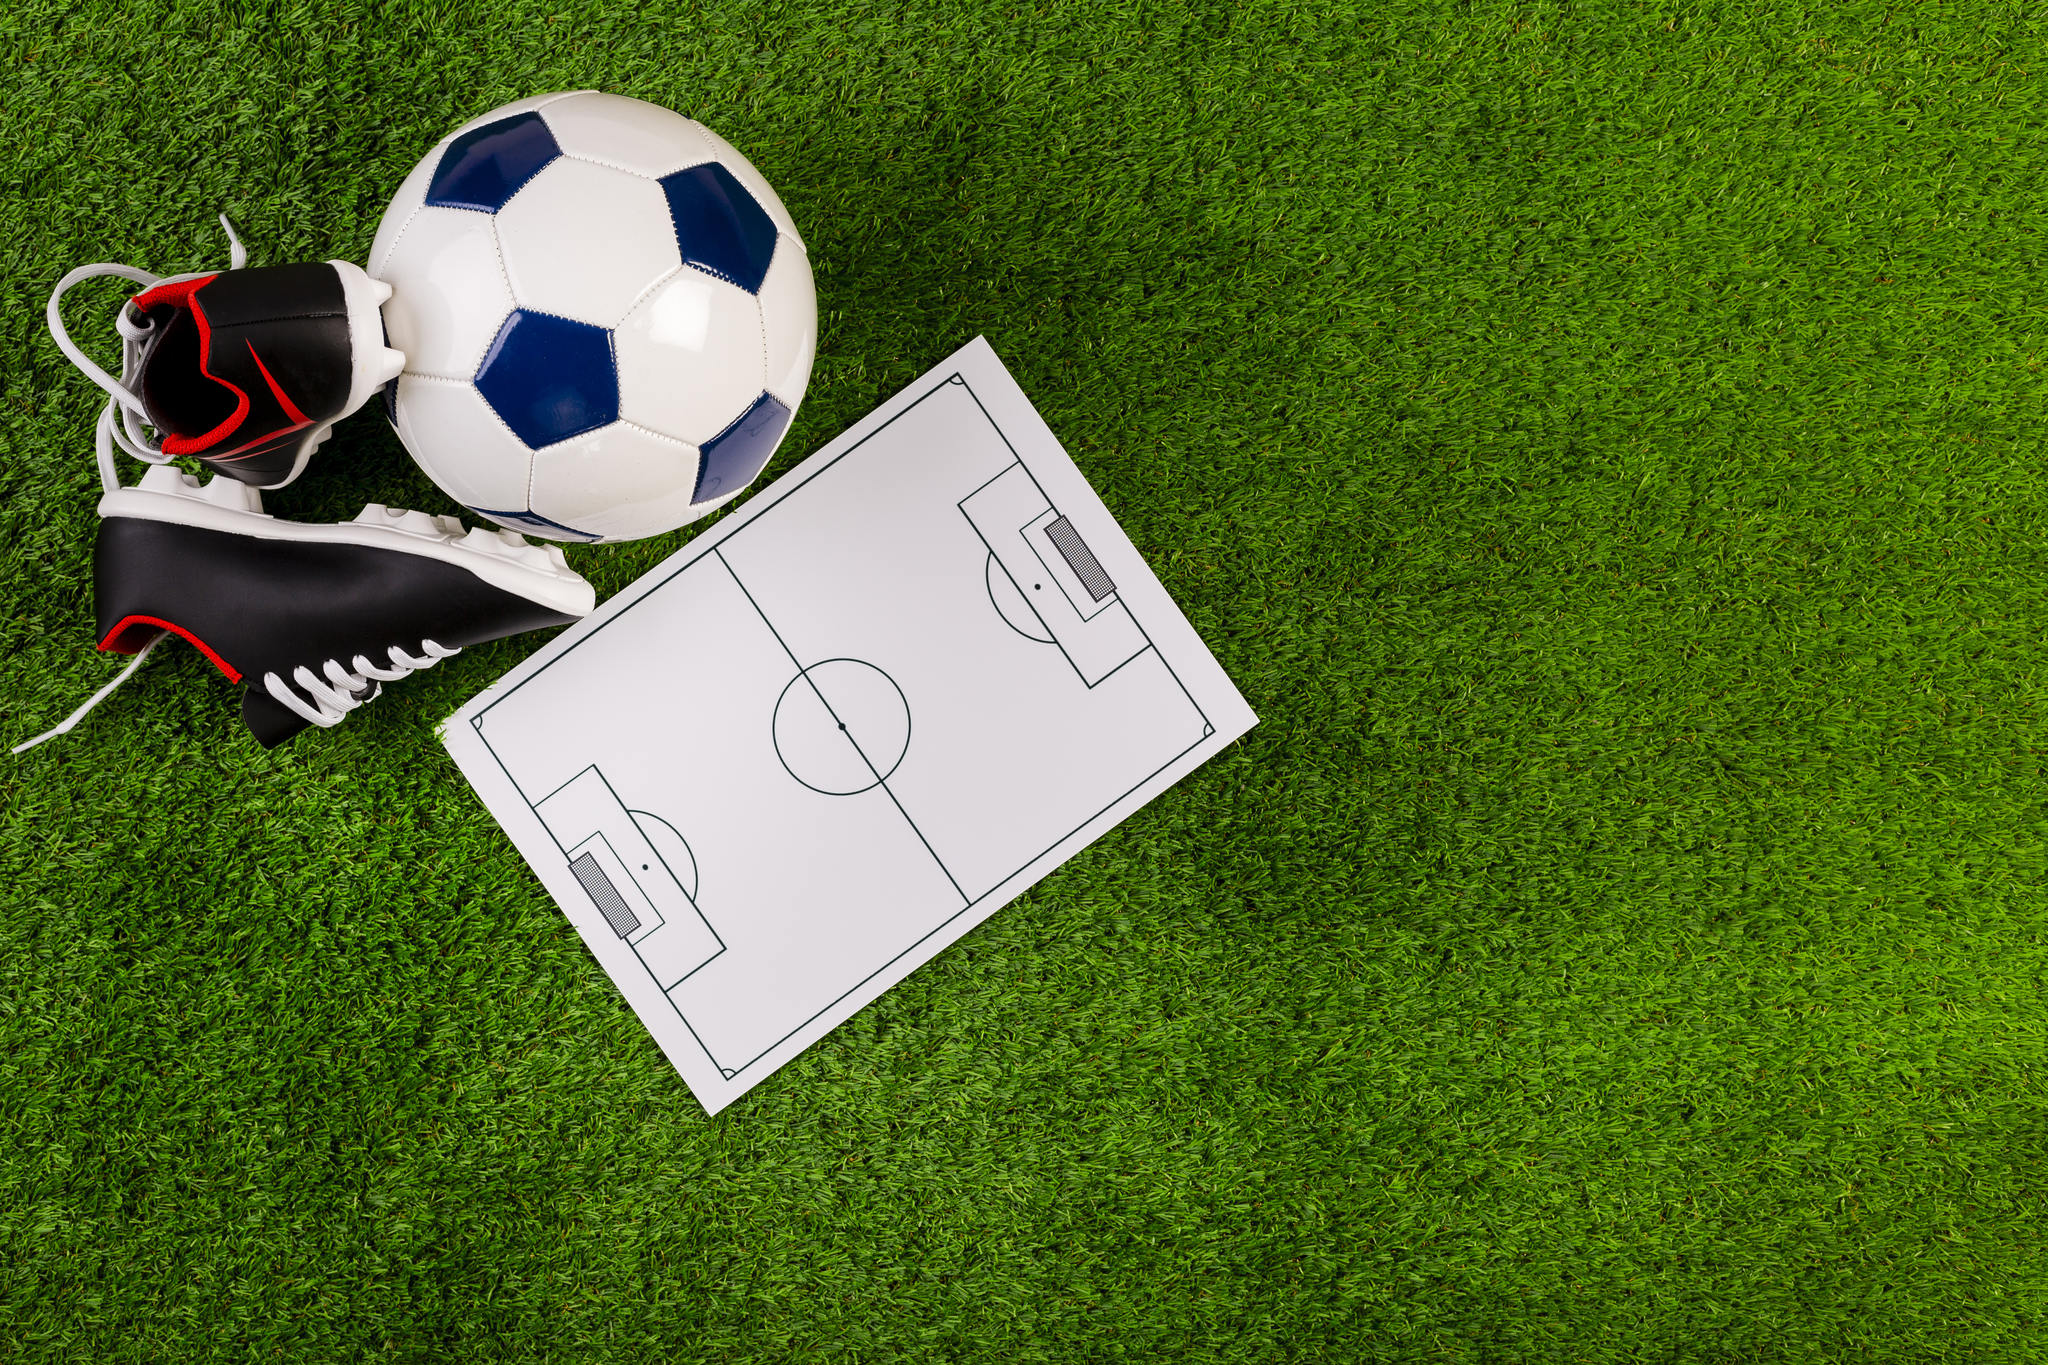 campo de futebol com uma quadra impressa com chuteira e bola